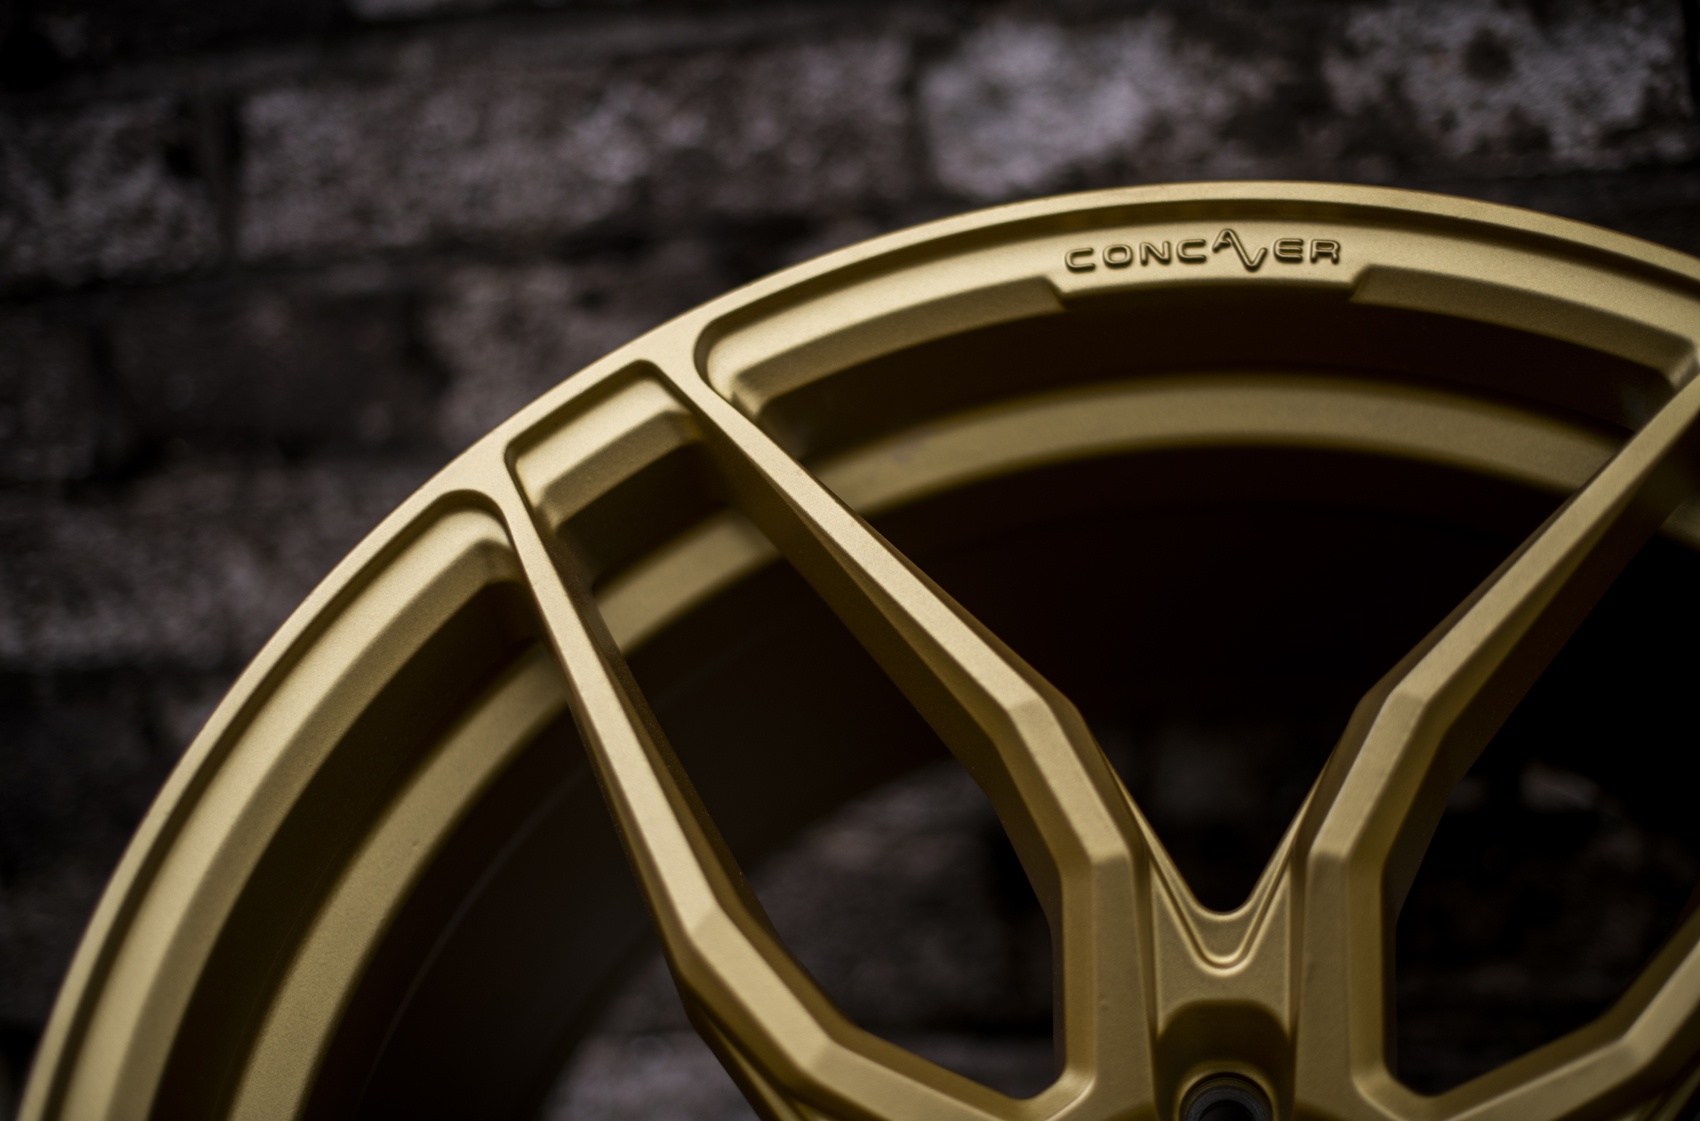   Concaver CVR3 Matt Gold